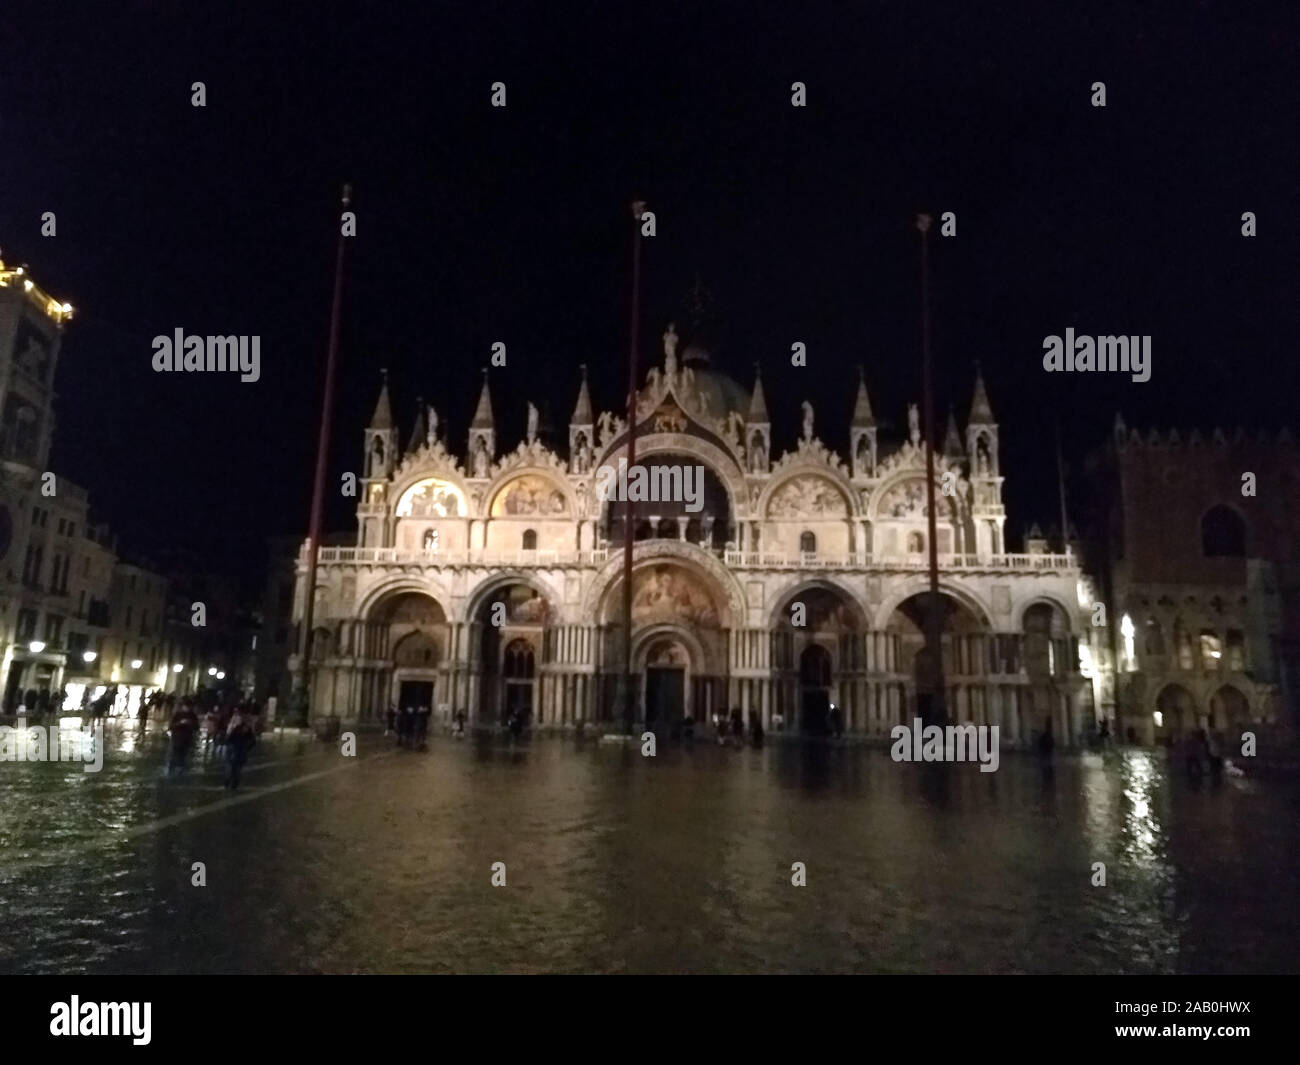 Venedig, Italien - 23. November 2019: Piazza San Marco durch hohe Wasser geflutet Stockfoto